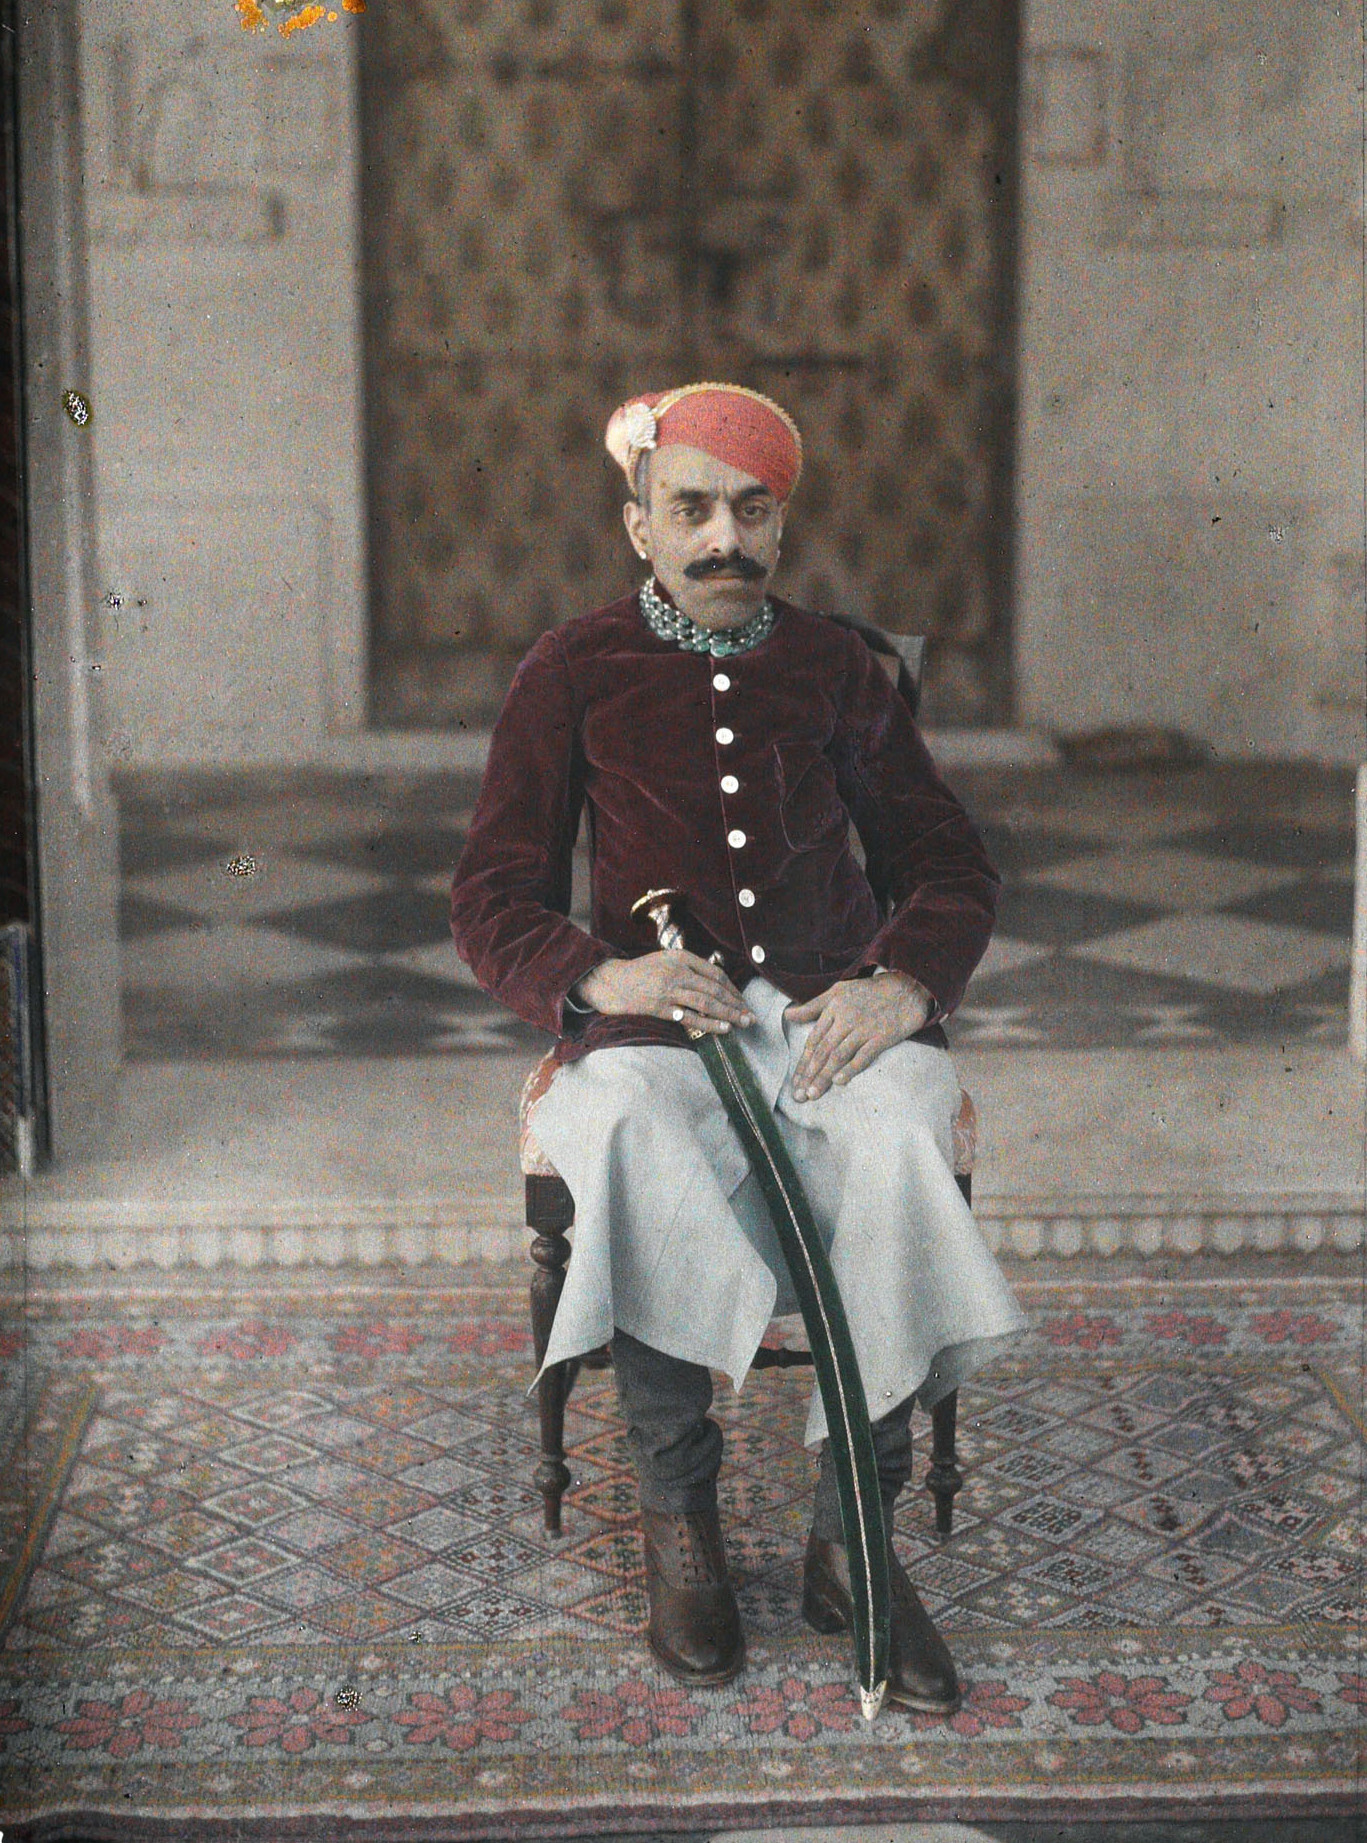 Удайпур, Индия. Раджпутский наследный принц Мевара Махарана Бхупал Сингх, 1927 год, автор Роджер Дюма (автохром)